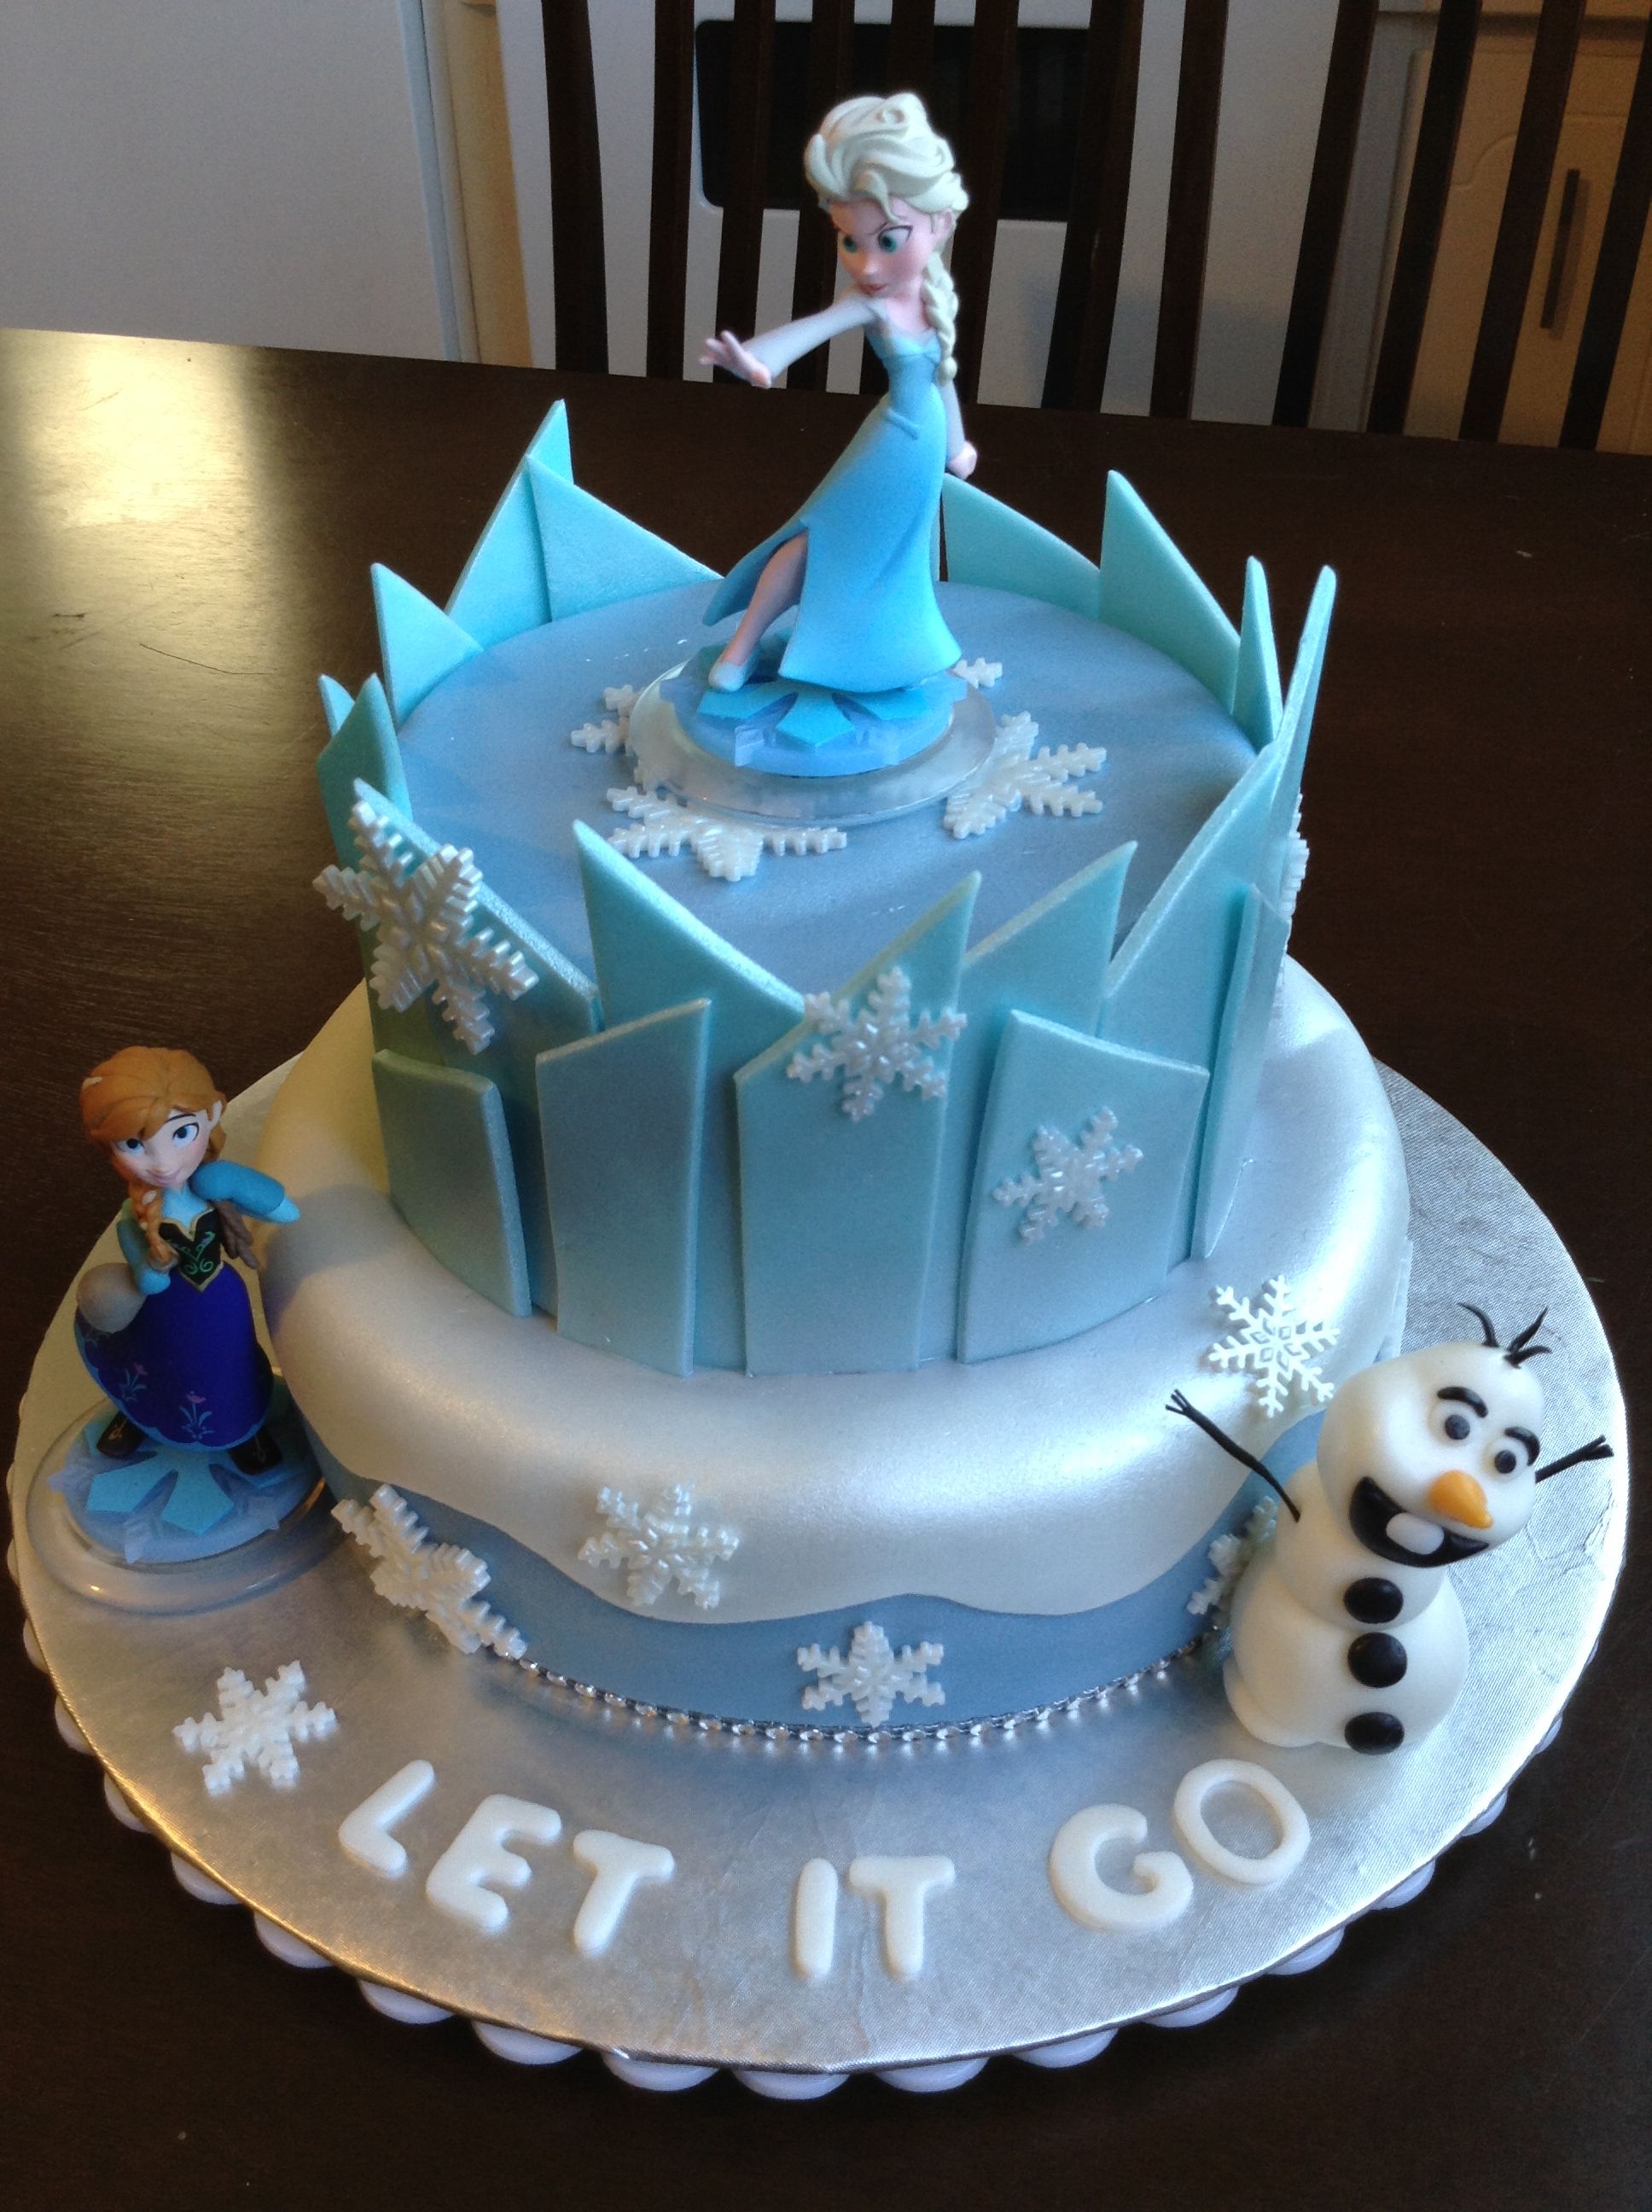 ❄ Fiesta de Cumpleaños Frozen ⛄ +101 Ideas Originales | Cake ...